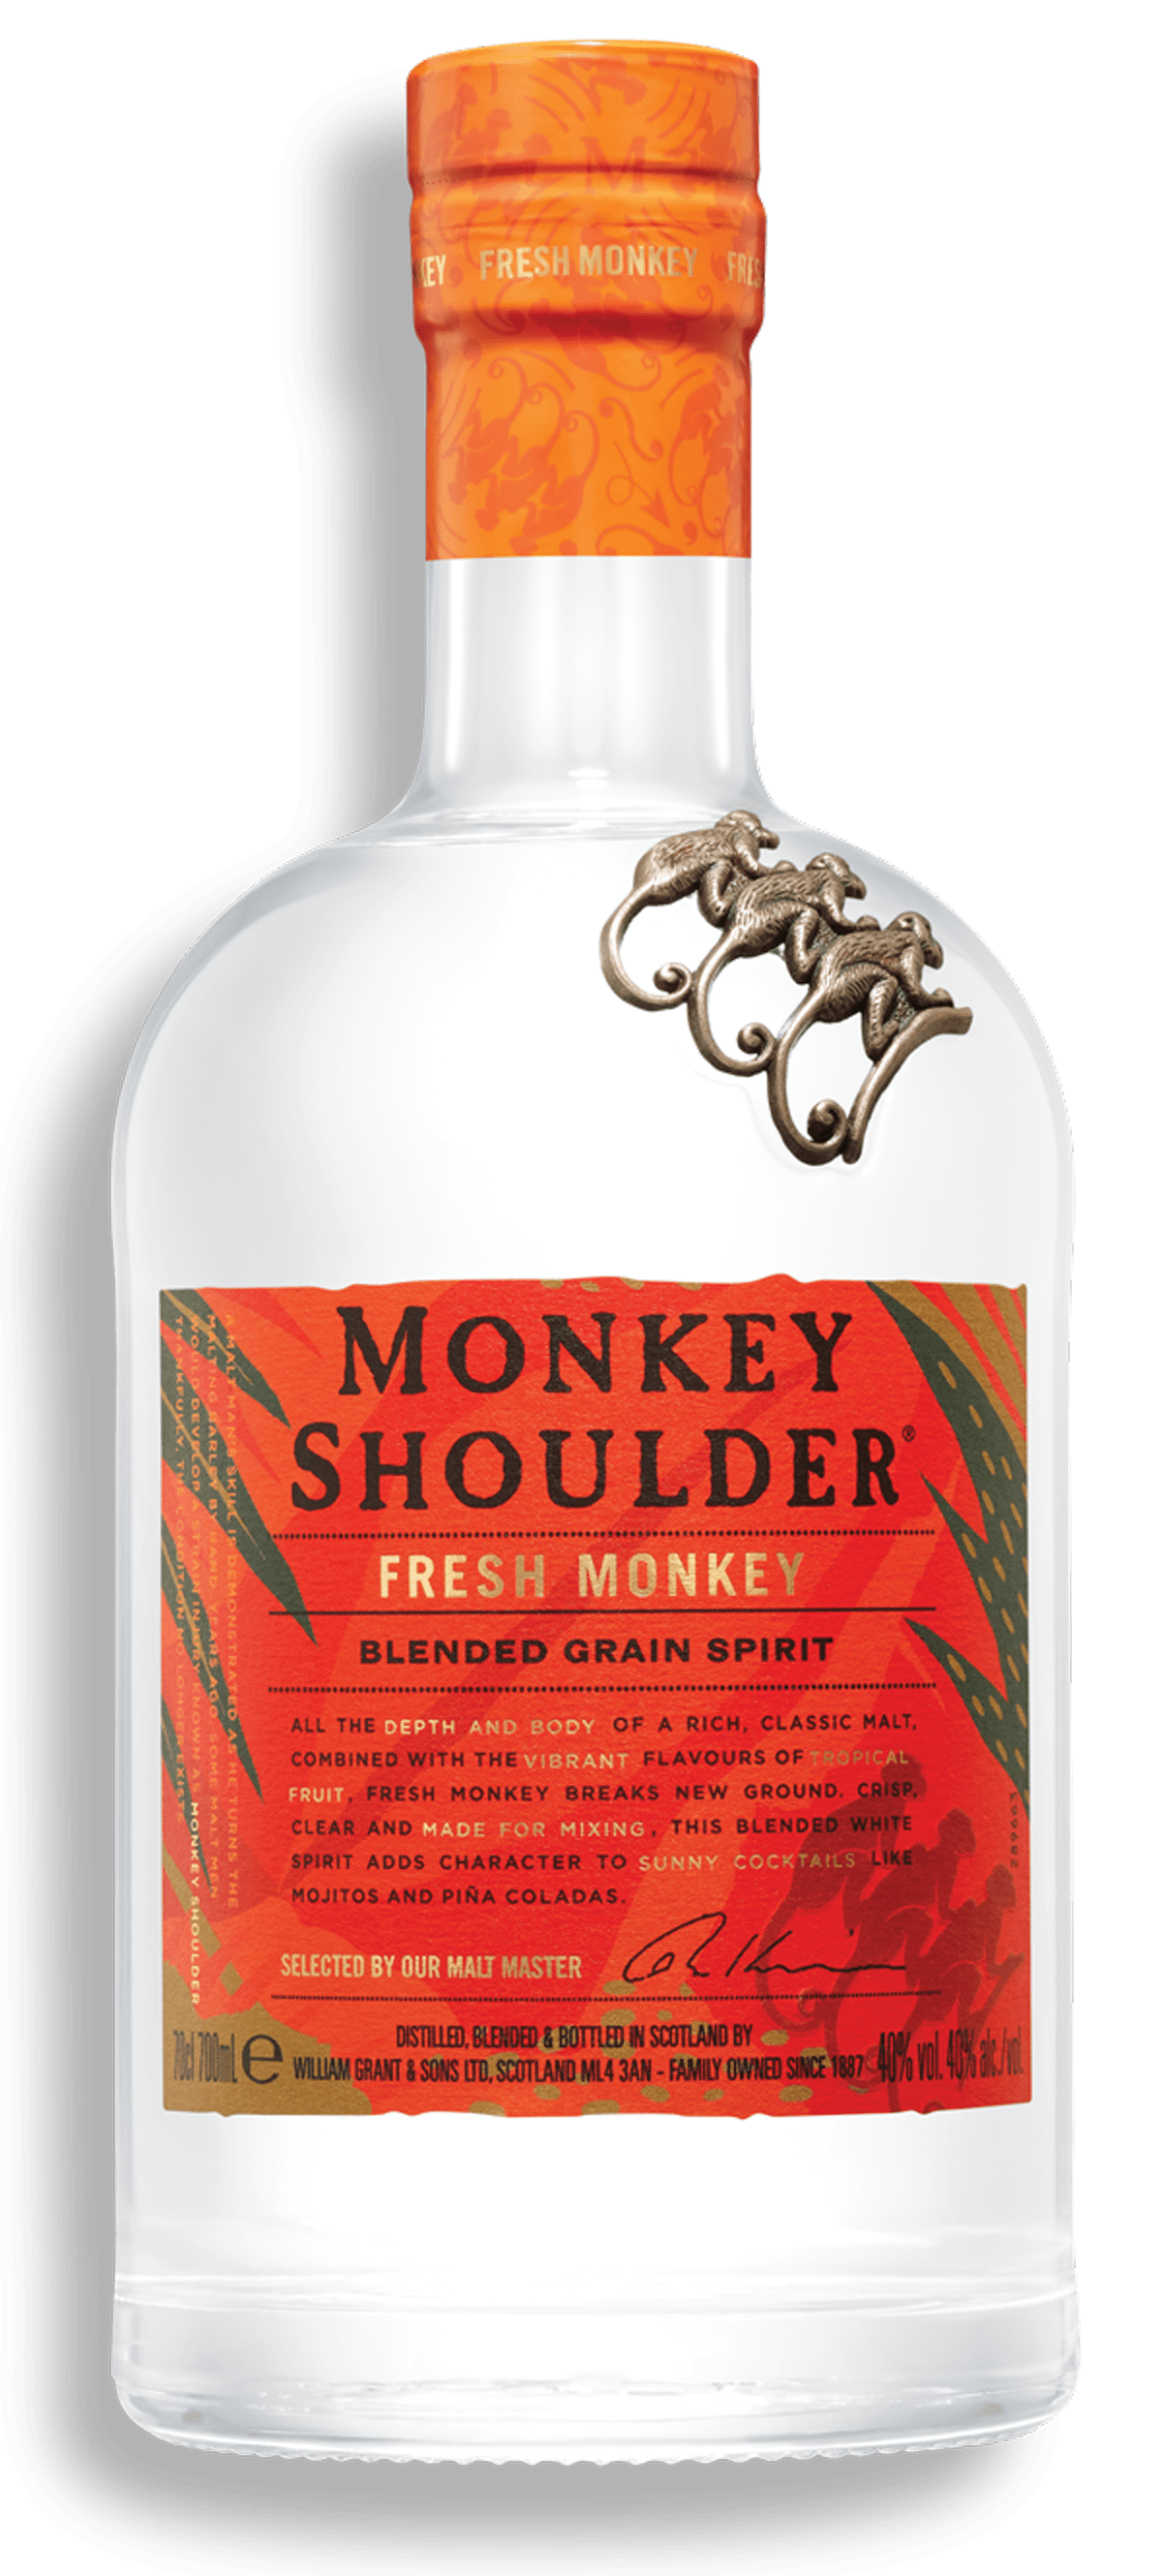 Monkey Shoulder & Limited-Edition Metal Cocktail Strainer Tin Gift Set